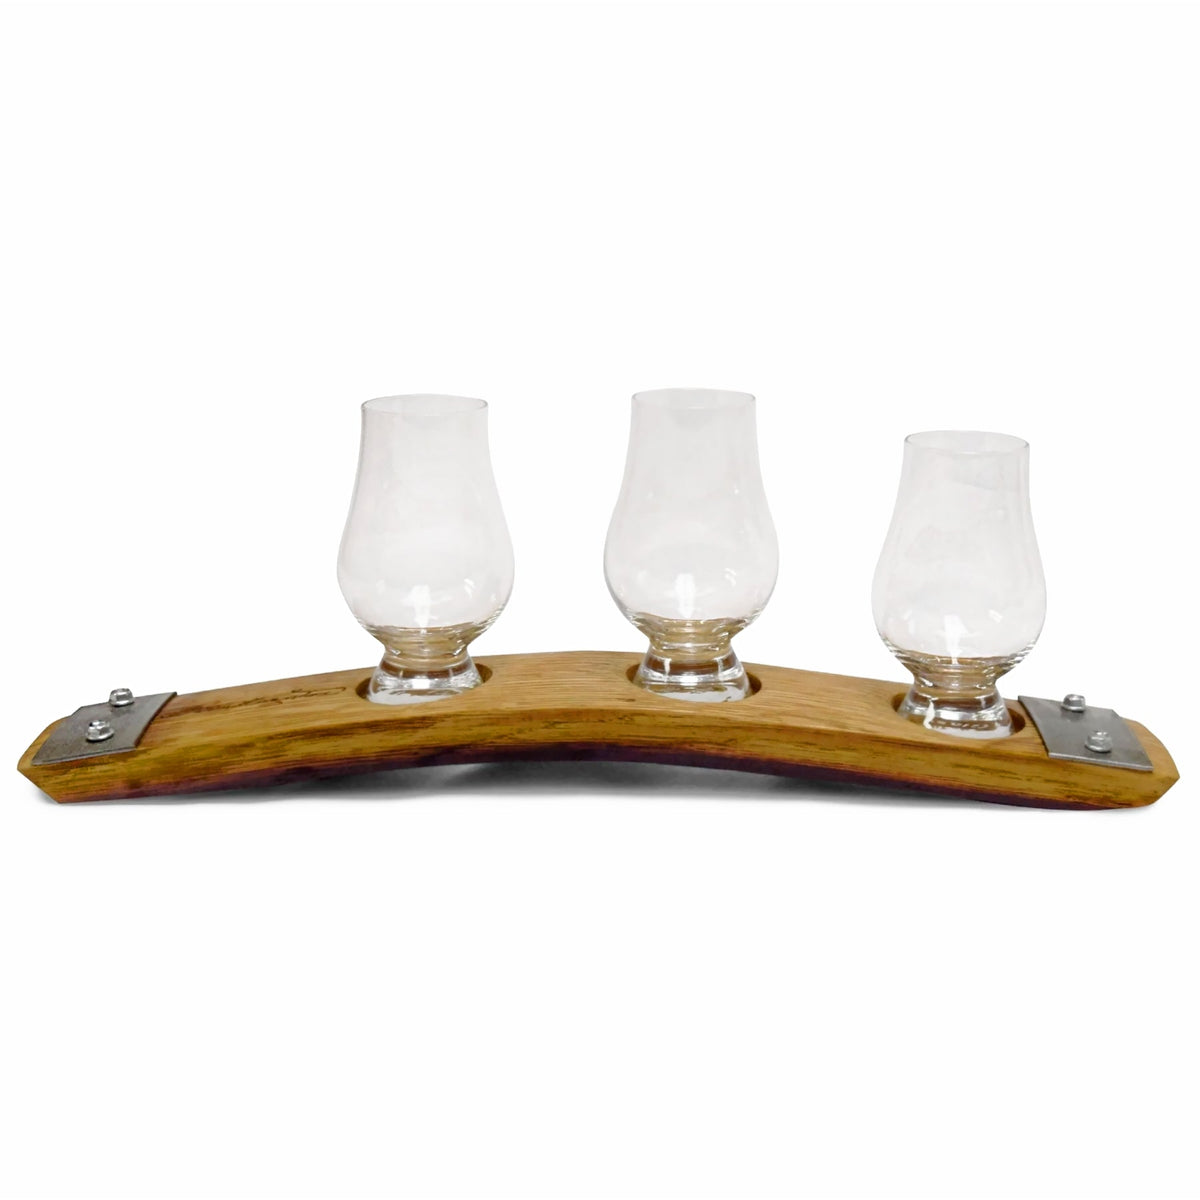 Glencairn Crystal Whisky Glencairn Tasting Glass - 28940_ The Shops at  Mount Vernon